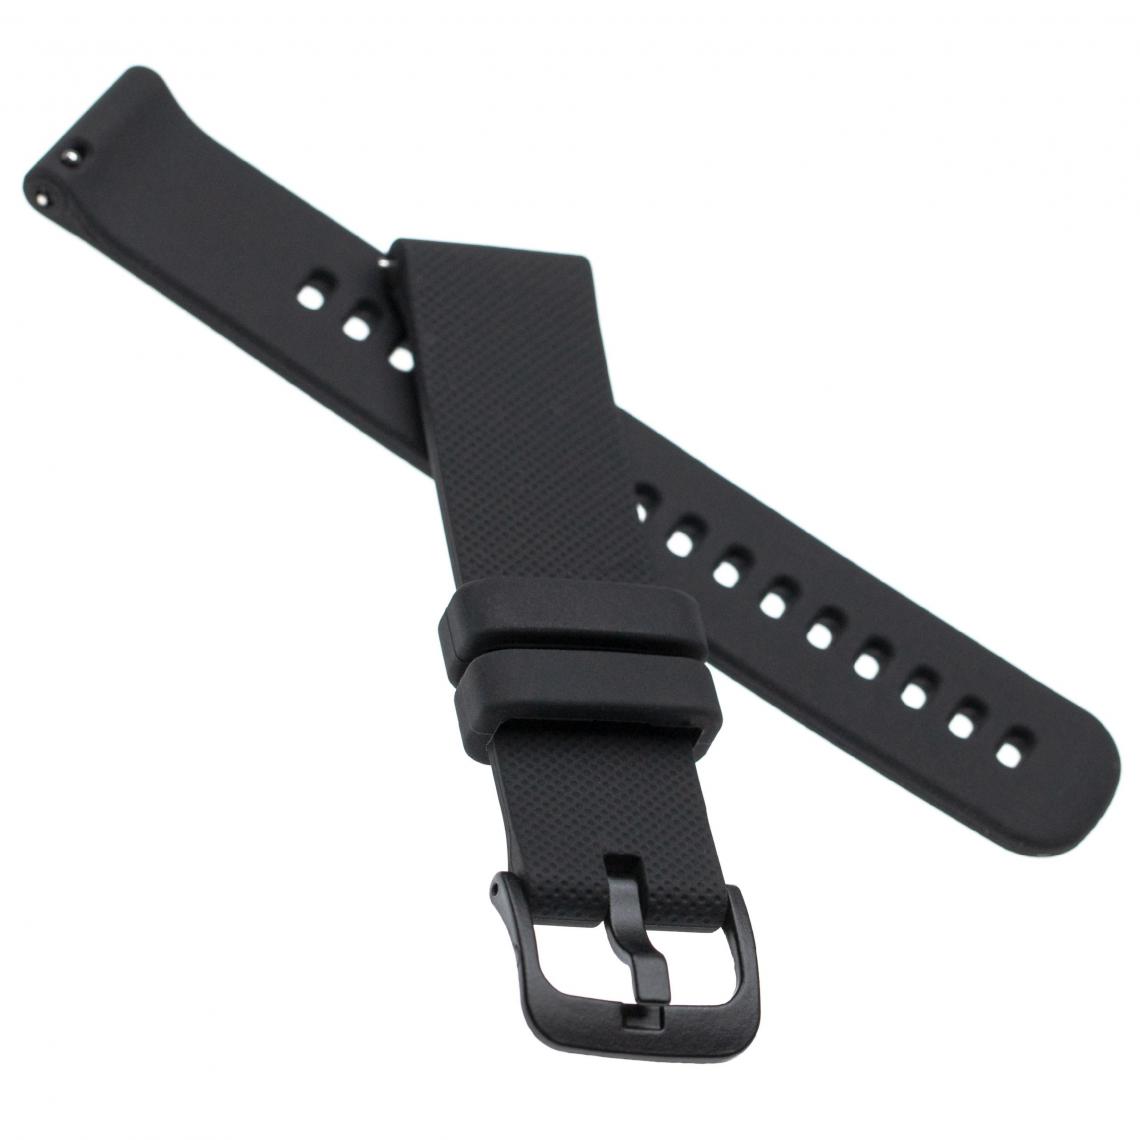 Vhbw - vhbw bracelet compatible avec Garmin Active S, Vivoactive 4s montre connectée - 10,7 + 8,2 cm silicone noir - Accessoires montres connectées